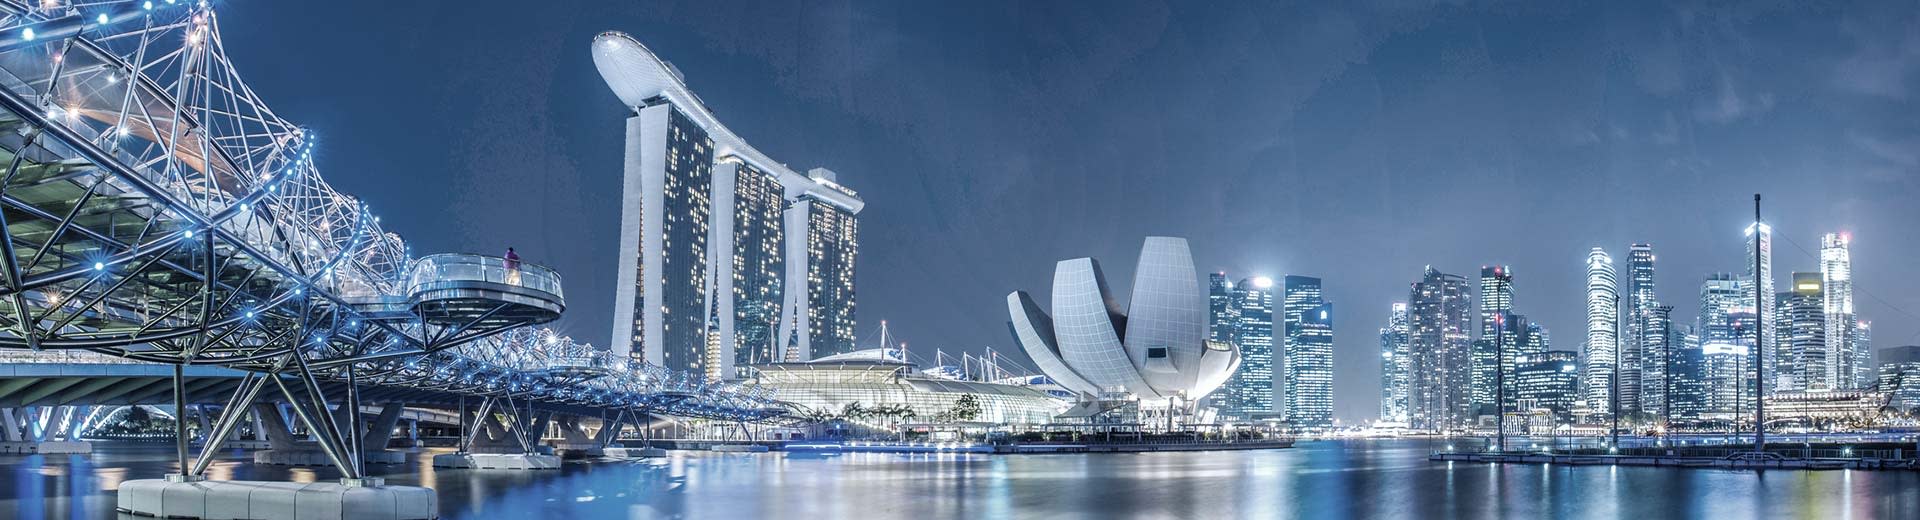 新加坡现代化大都市的夜景，巨大的摩天大楼和桥梁照亮了天空。